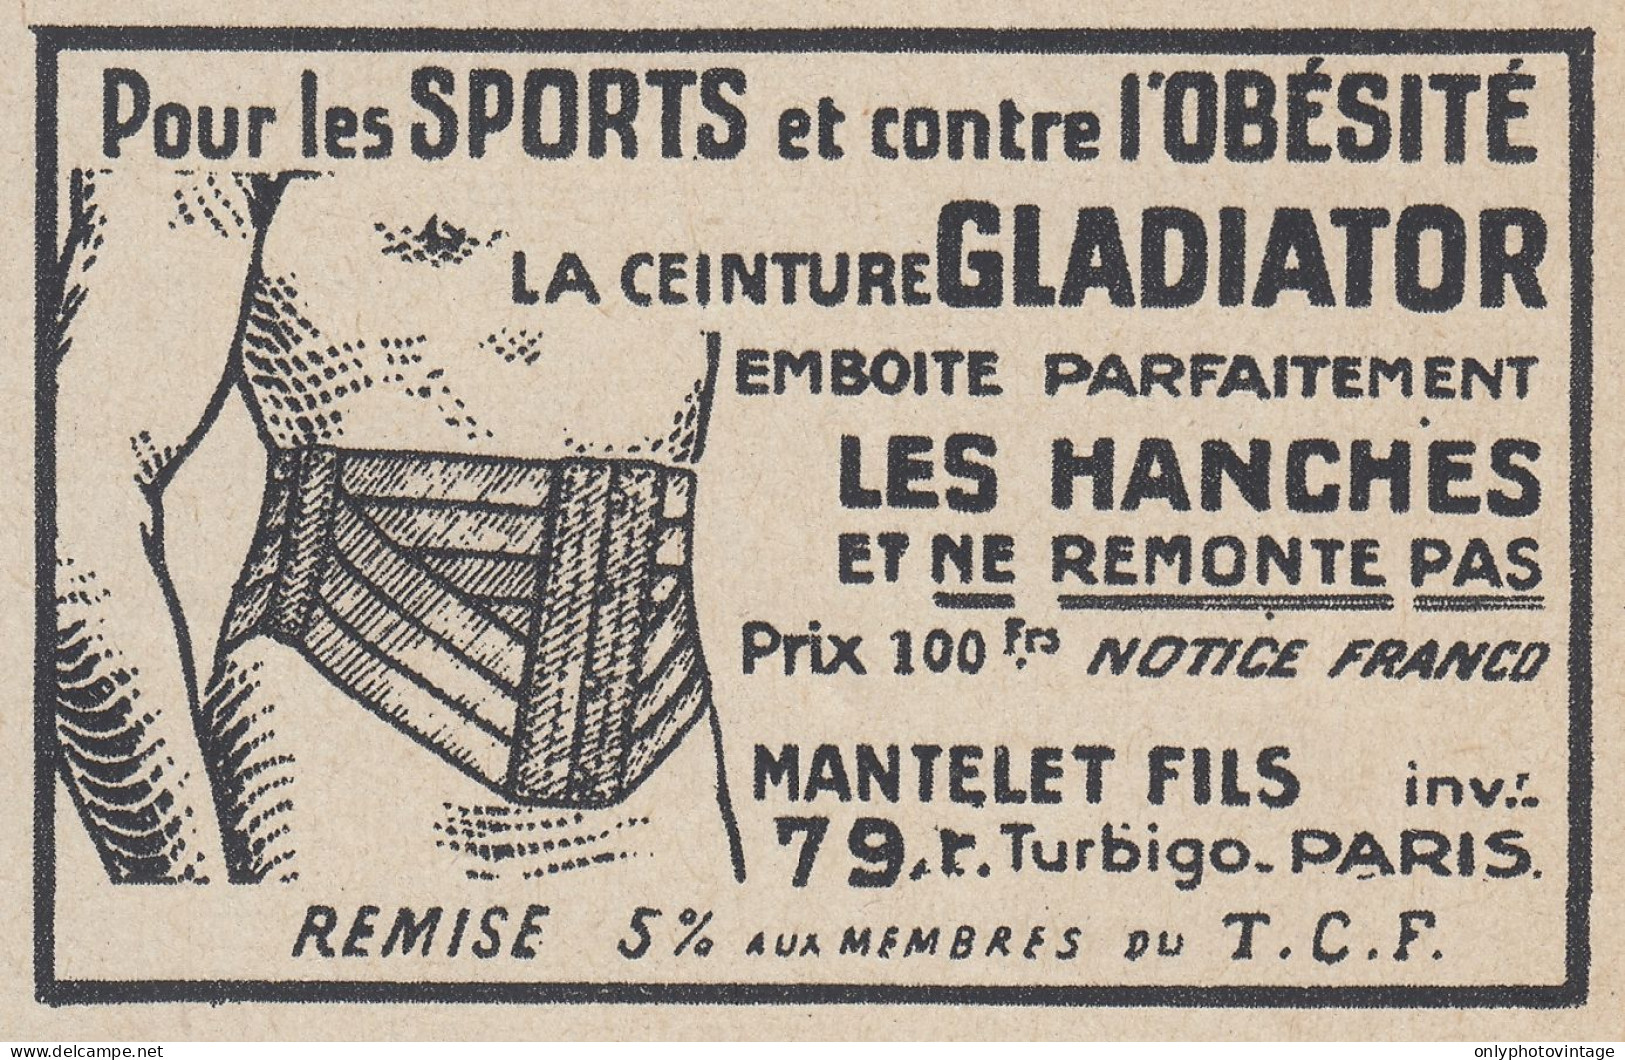 Ceinture GLADIATOR - 1938 Vintage Advertising - Pubblicit� Epoca - Publicidad